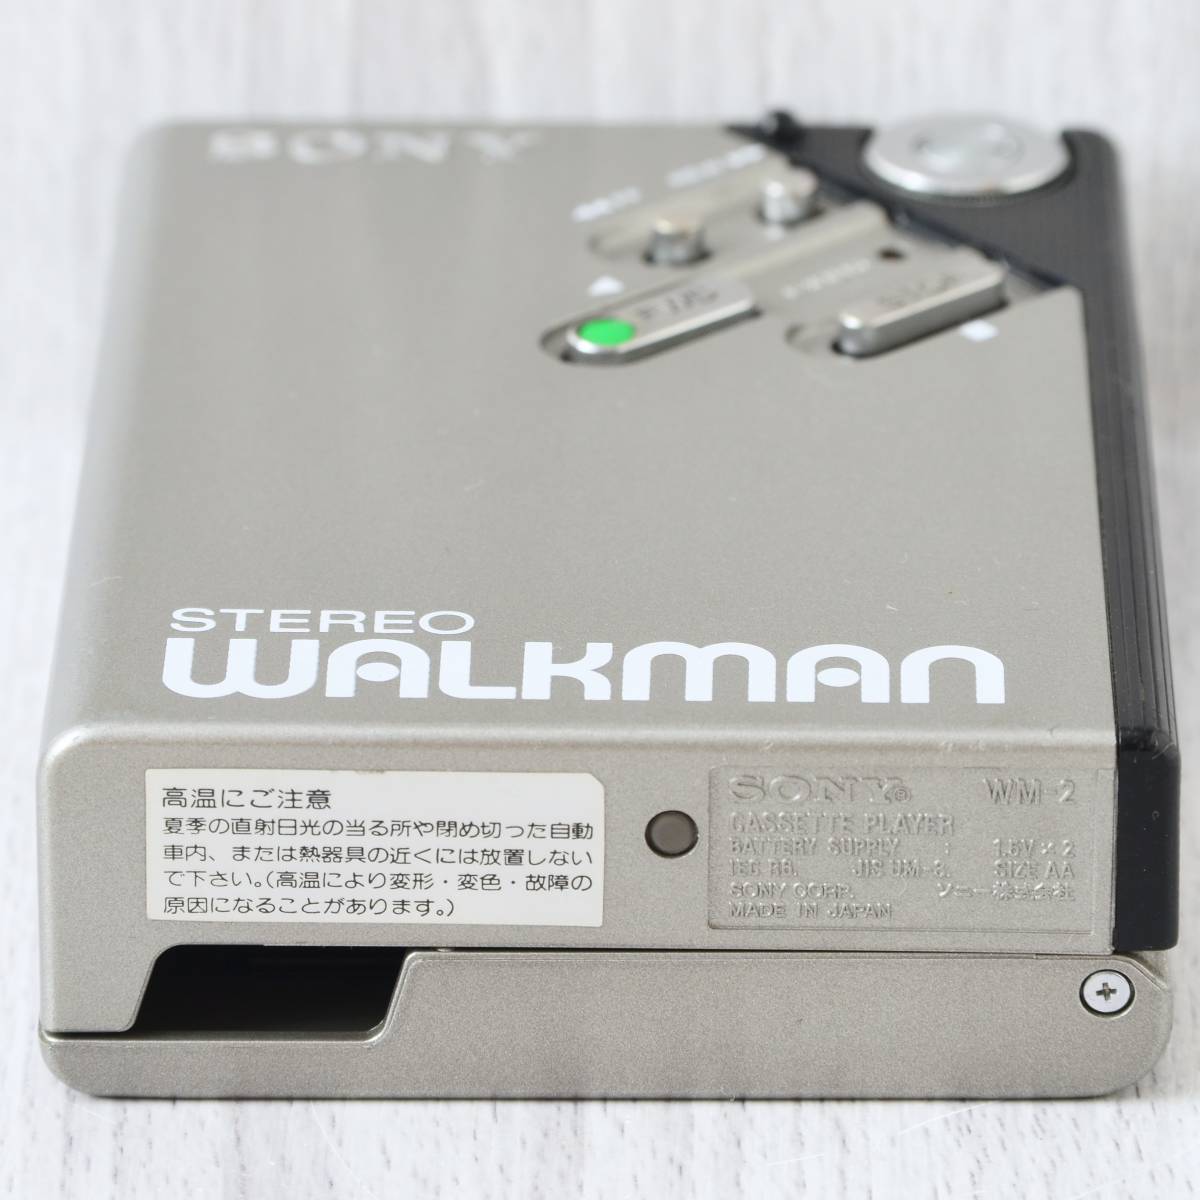 美品 SONY WALKMAN WM-2 カセットウォークマン 銀 修理・整備済 完動品 